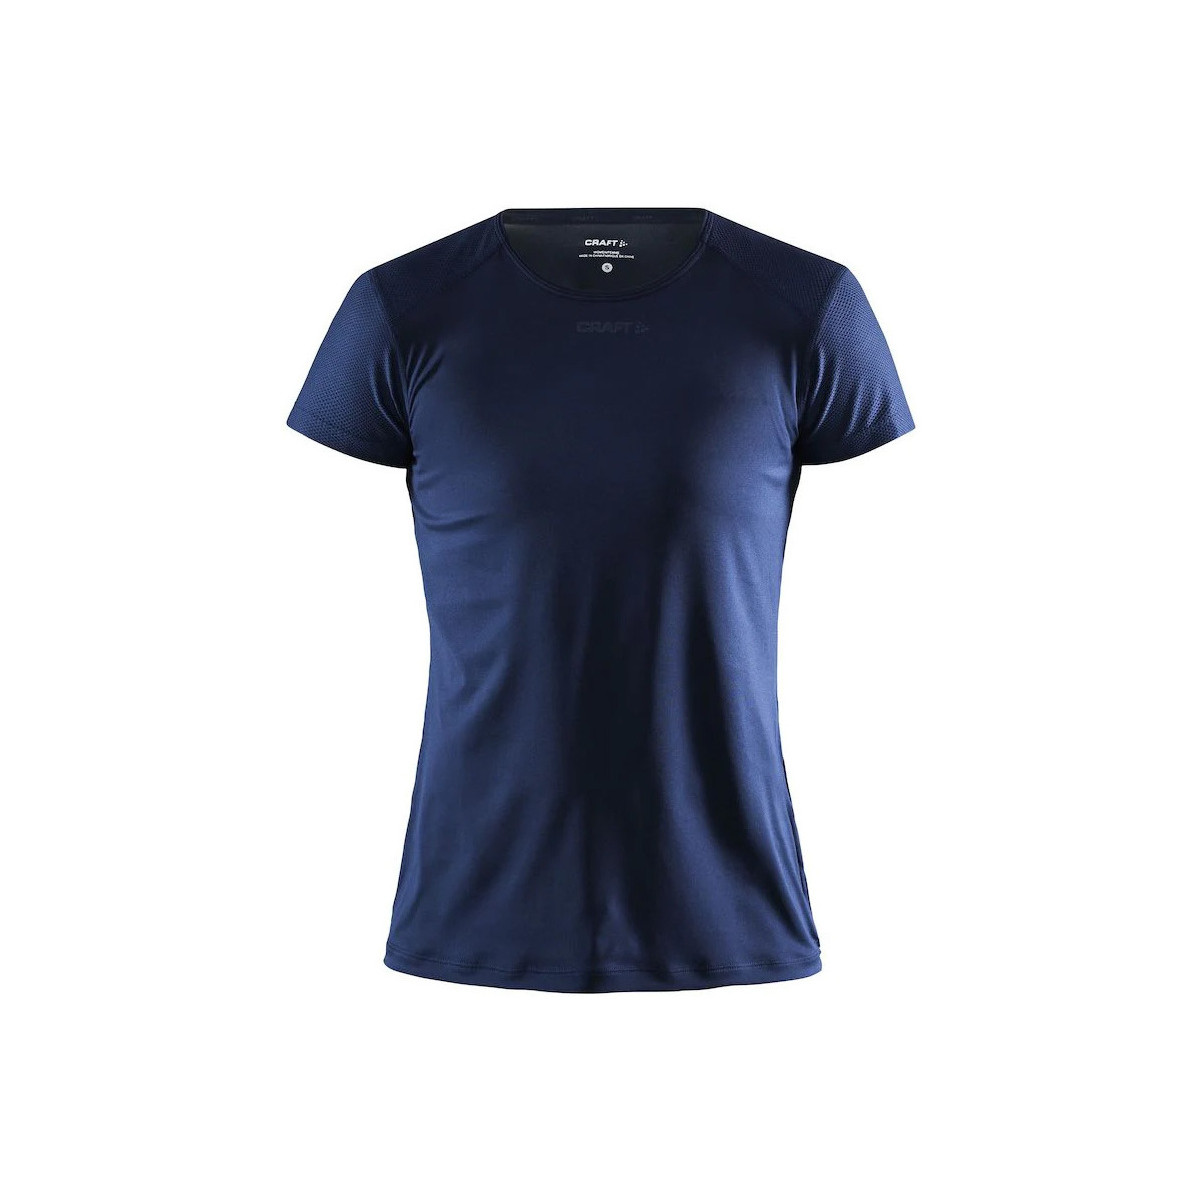 Vêtements Femme T-shirts manches courtes Craft ADV Essence Bleu